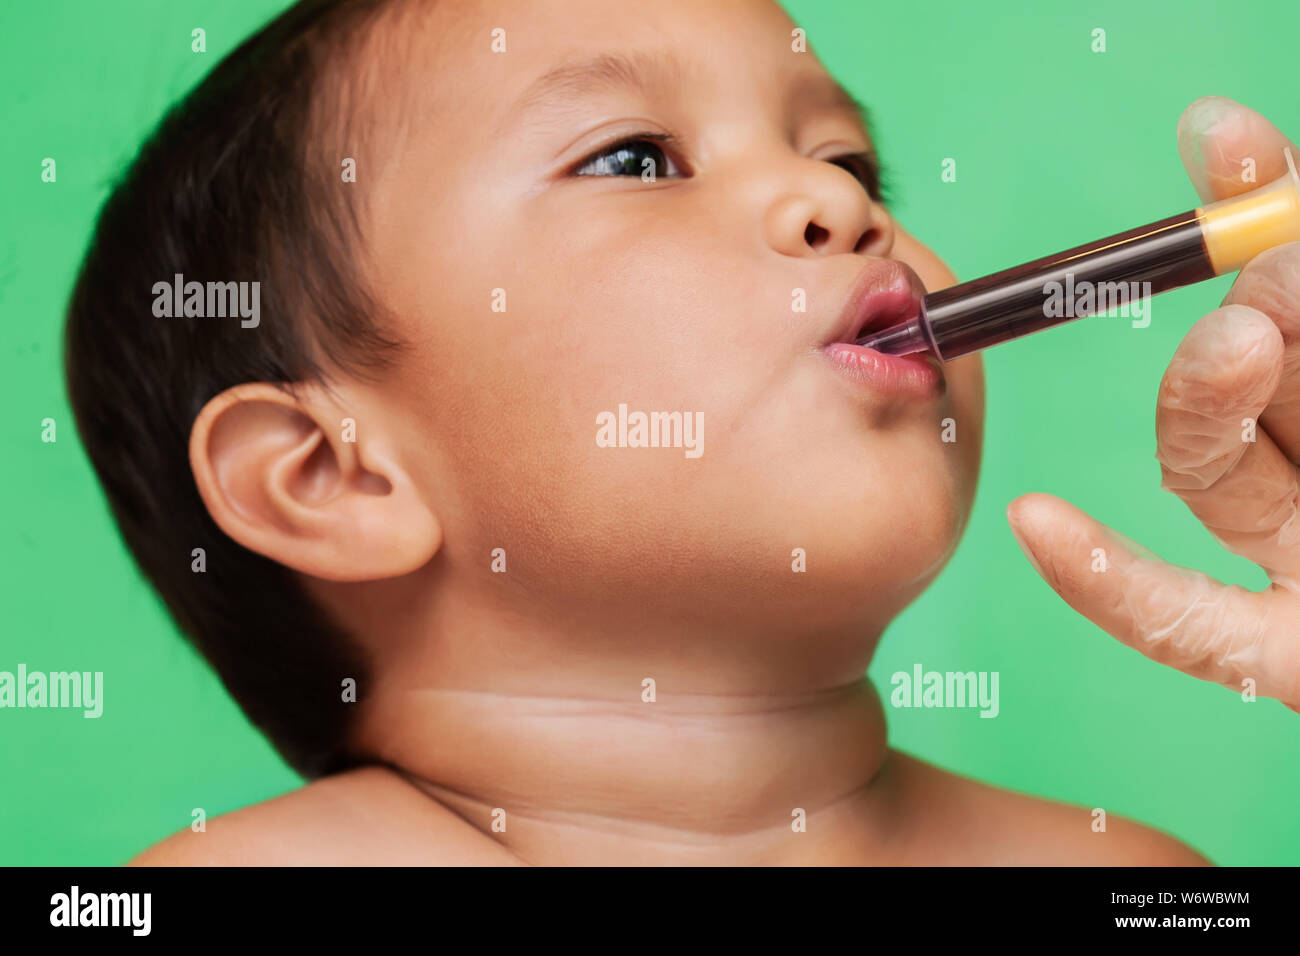 Un mignon petit garçon prenant la posologie appropriée de la médecine grippe seringue orale par le biais d'un professionnel de la santé. Banque D'Images